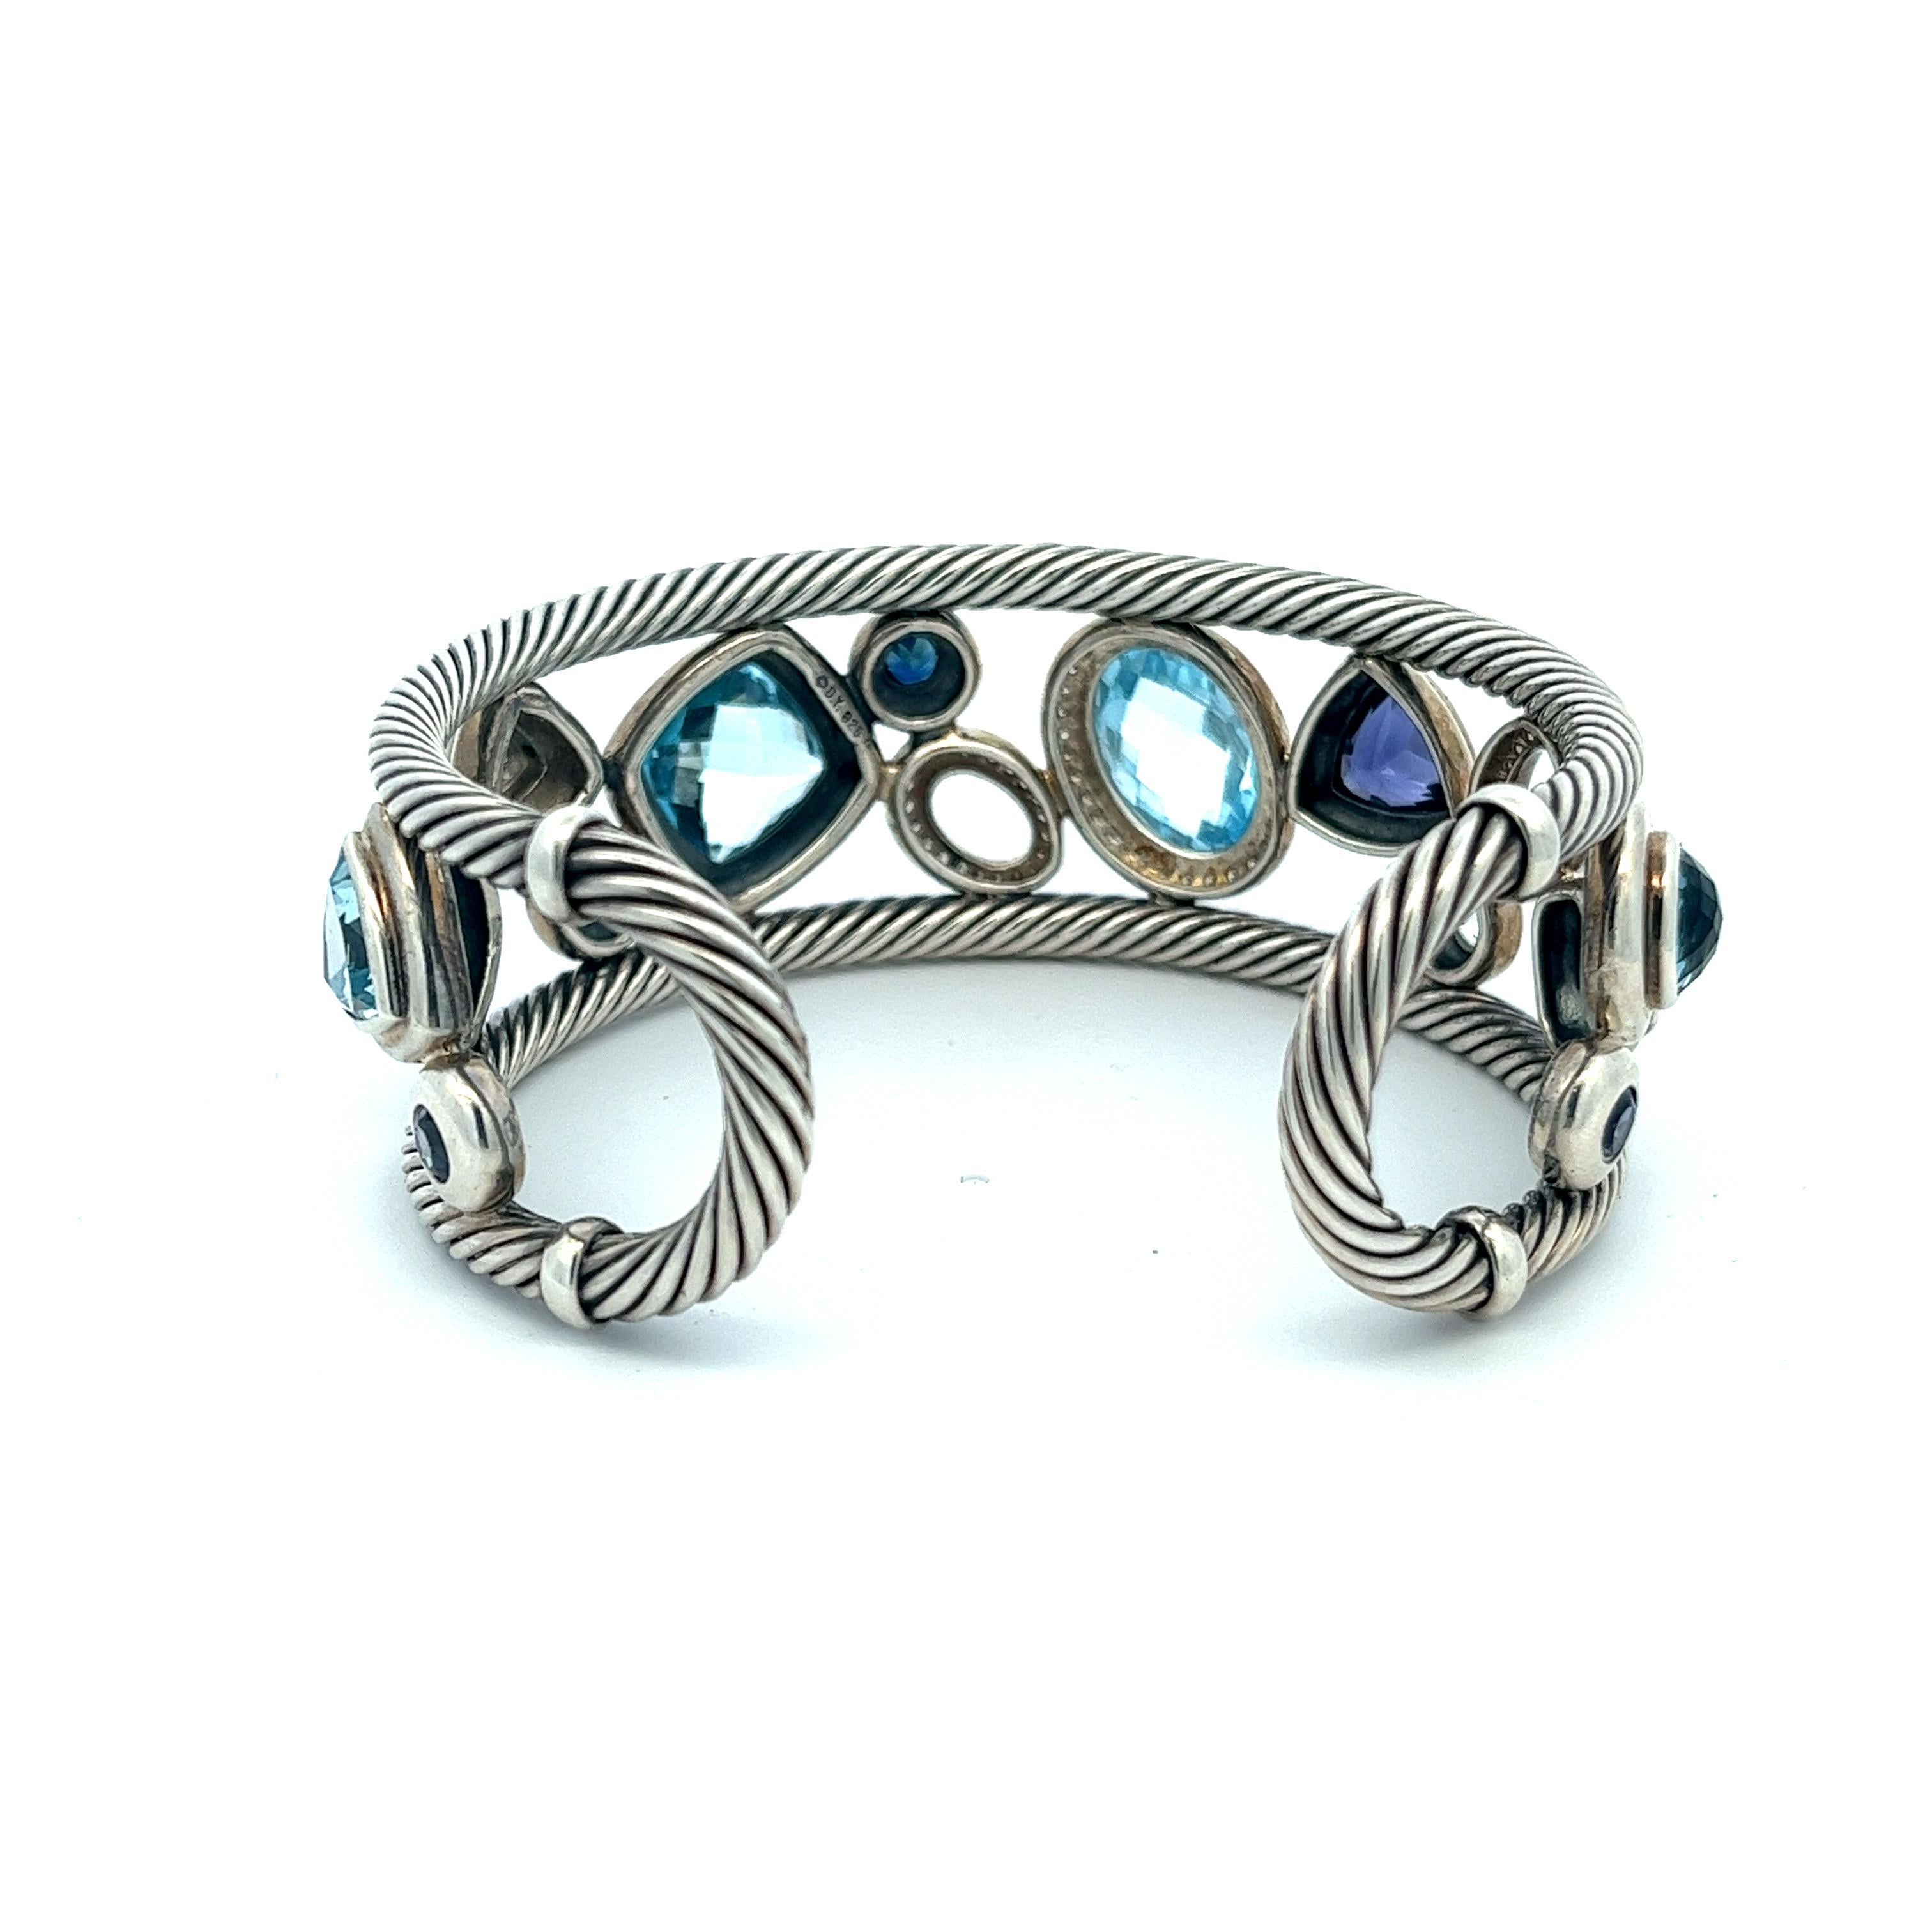 Oval Cut Modernist David Yurman Blue Oval Mosaic Cuff Bracelet in Sterling Silver 925